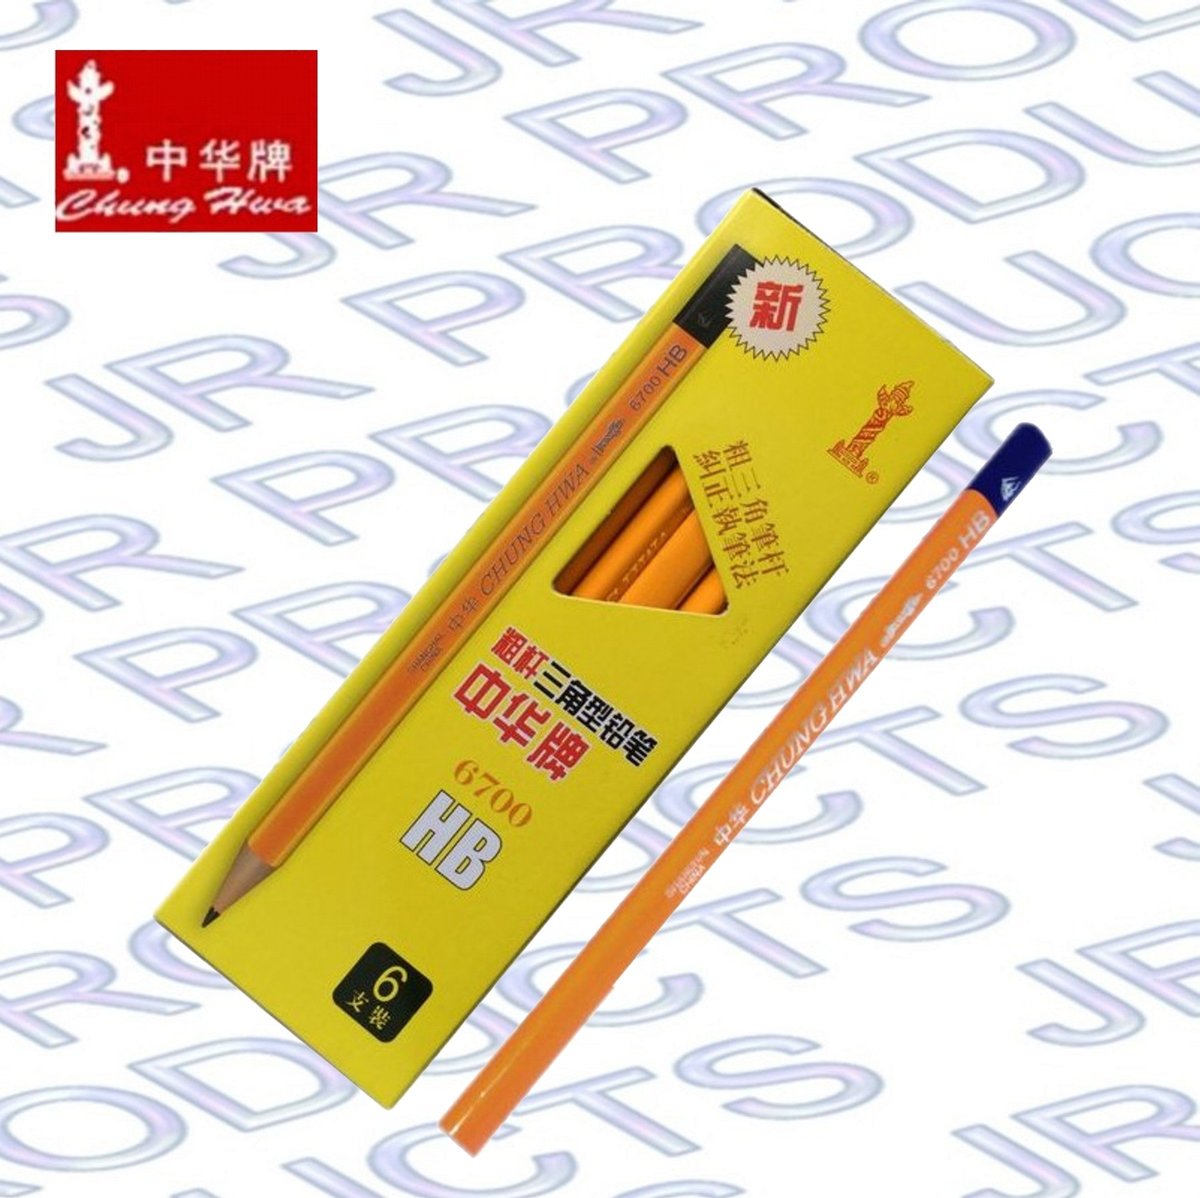 中華牌 6700粗杆大三角hb鉛筆 6支裝 香港行貨 Hktvmall 香港最大網購平台